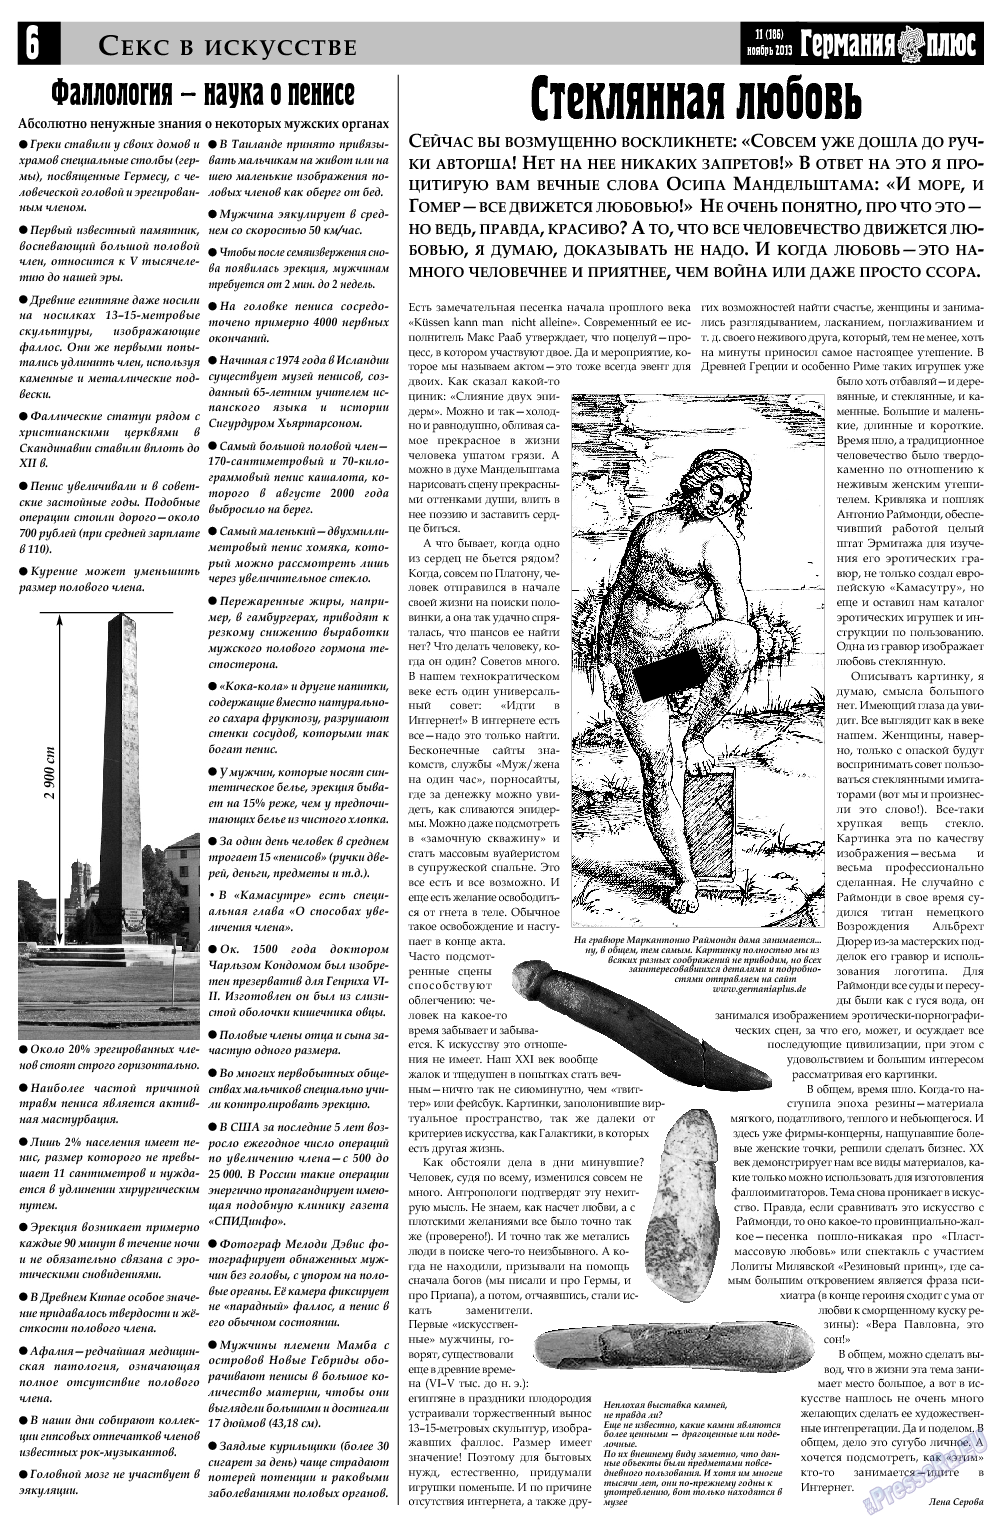 Германия плюс, газета. 2013 №11 стр.6